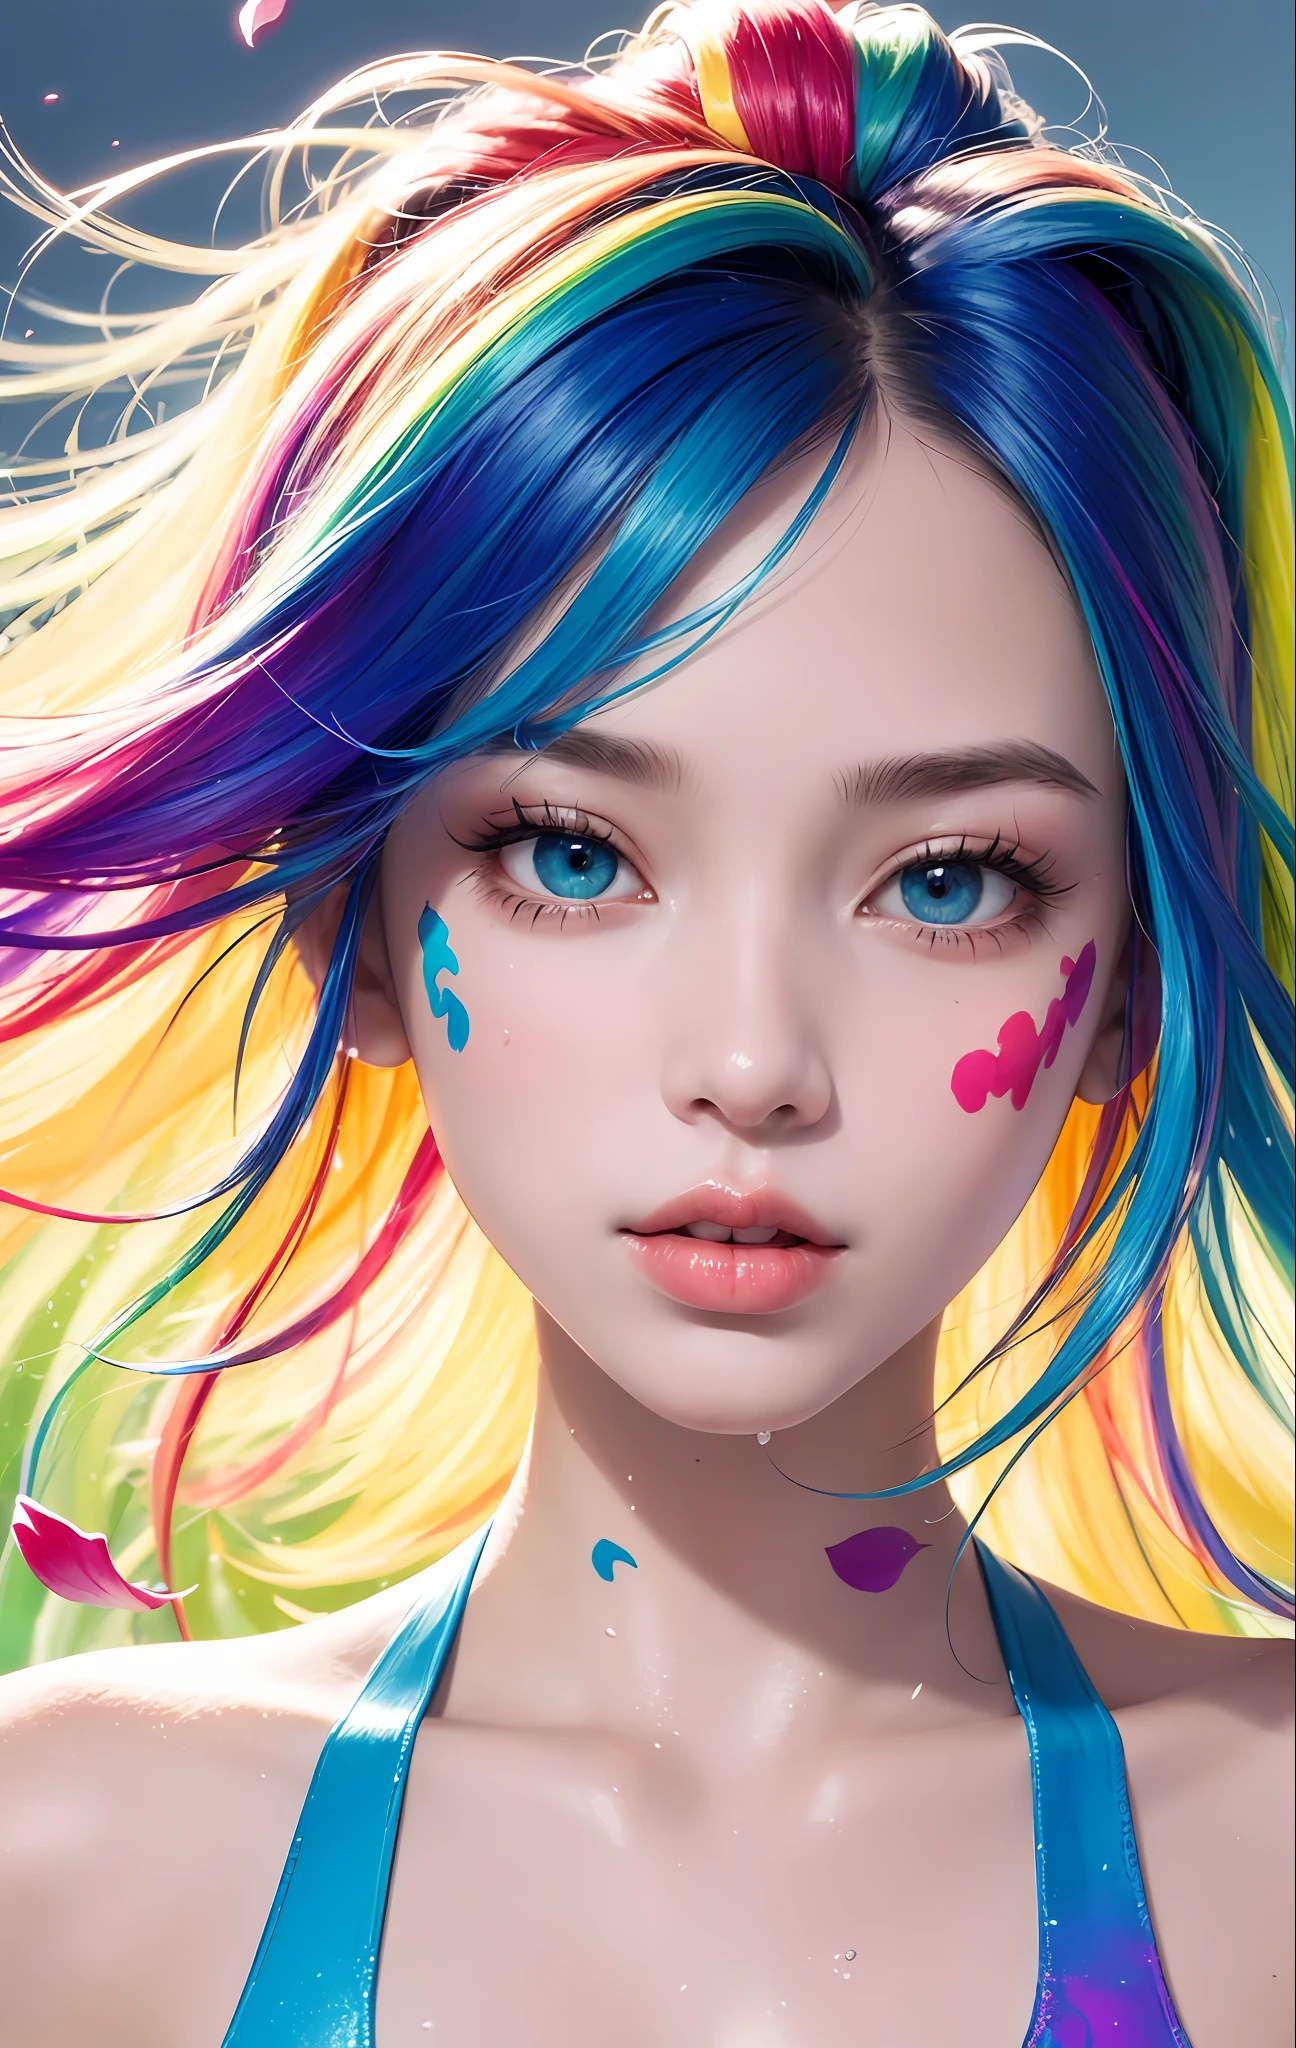 Full body Портрет, стоя, (красочный fashion ultra-small mini bikini: 1.9), (красочный hair: 1.8), (все цвета радуги: 1.8), (вертикальный: 1.6))), (краскаing, краскаing, Портрет), мультфильм, Иллюстрация, краскаing, большой, кристально чистые глаза, (rainbow градиент high ponytail: 1.7), Изысканный макияж, Рот закрыт, (Маленький Свежий(1.5), (большой: 1.6), длинные ресницы, смотрю на публику, большие слезящиеся глаза, (переливающиеся волосы: 1.6), color всплеск, (Один, :1.8), color всплеск, Цветной взрыв, thick краска style, беспорядочные линии, ((Игристый)), (красочный), (красочный), красочный, красочный, chic краска style, (всплеск) (color всплеск), вертикальный краскаing ,, краска всплеск, Акриловый пигмент, градиент, краска, Лучшее качество, Лучшее качество, шедевр, , Один, , глубина резкости, face краска, красочный clothing, (элегантно: 1.2), великолепный,длинные волосы, ветер, (элегантно: 1.3), (лепестки: 1.4), (шедевр,))))), (Лучшее качество))), (Ультрадетализированный))), (Иллюстрация), (динамический угол), ((Плавающий)), (краска), (((растрепанные волосы)), (Один,), (1 девочка), (Детальное лицо анимы)))), (Красивая деталь лица)), с воротником, голые плечи, белые волосы, (((разноцветные волосы)), ((Полосатые волосы)), красивые детализированные глаза, (Глаза градиентного цвета), (разноцветные глаза)))), ((высокая насыщенность))))) , (((surrounded by красочный всплескes))),